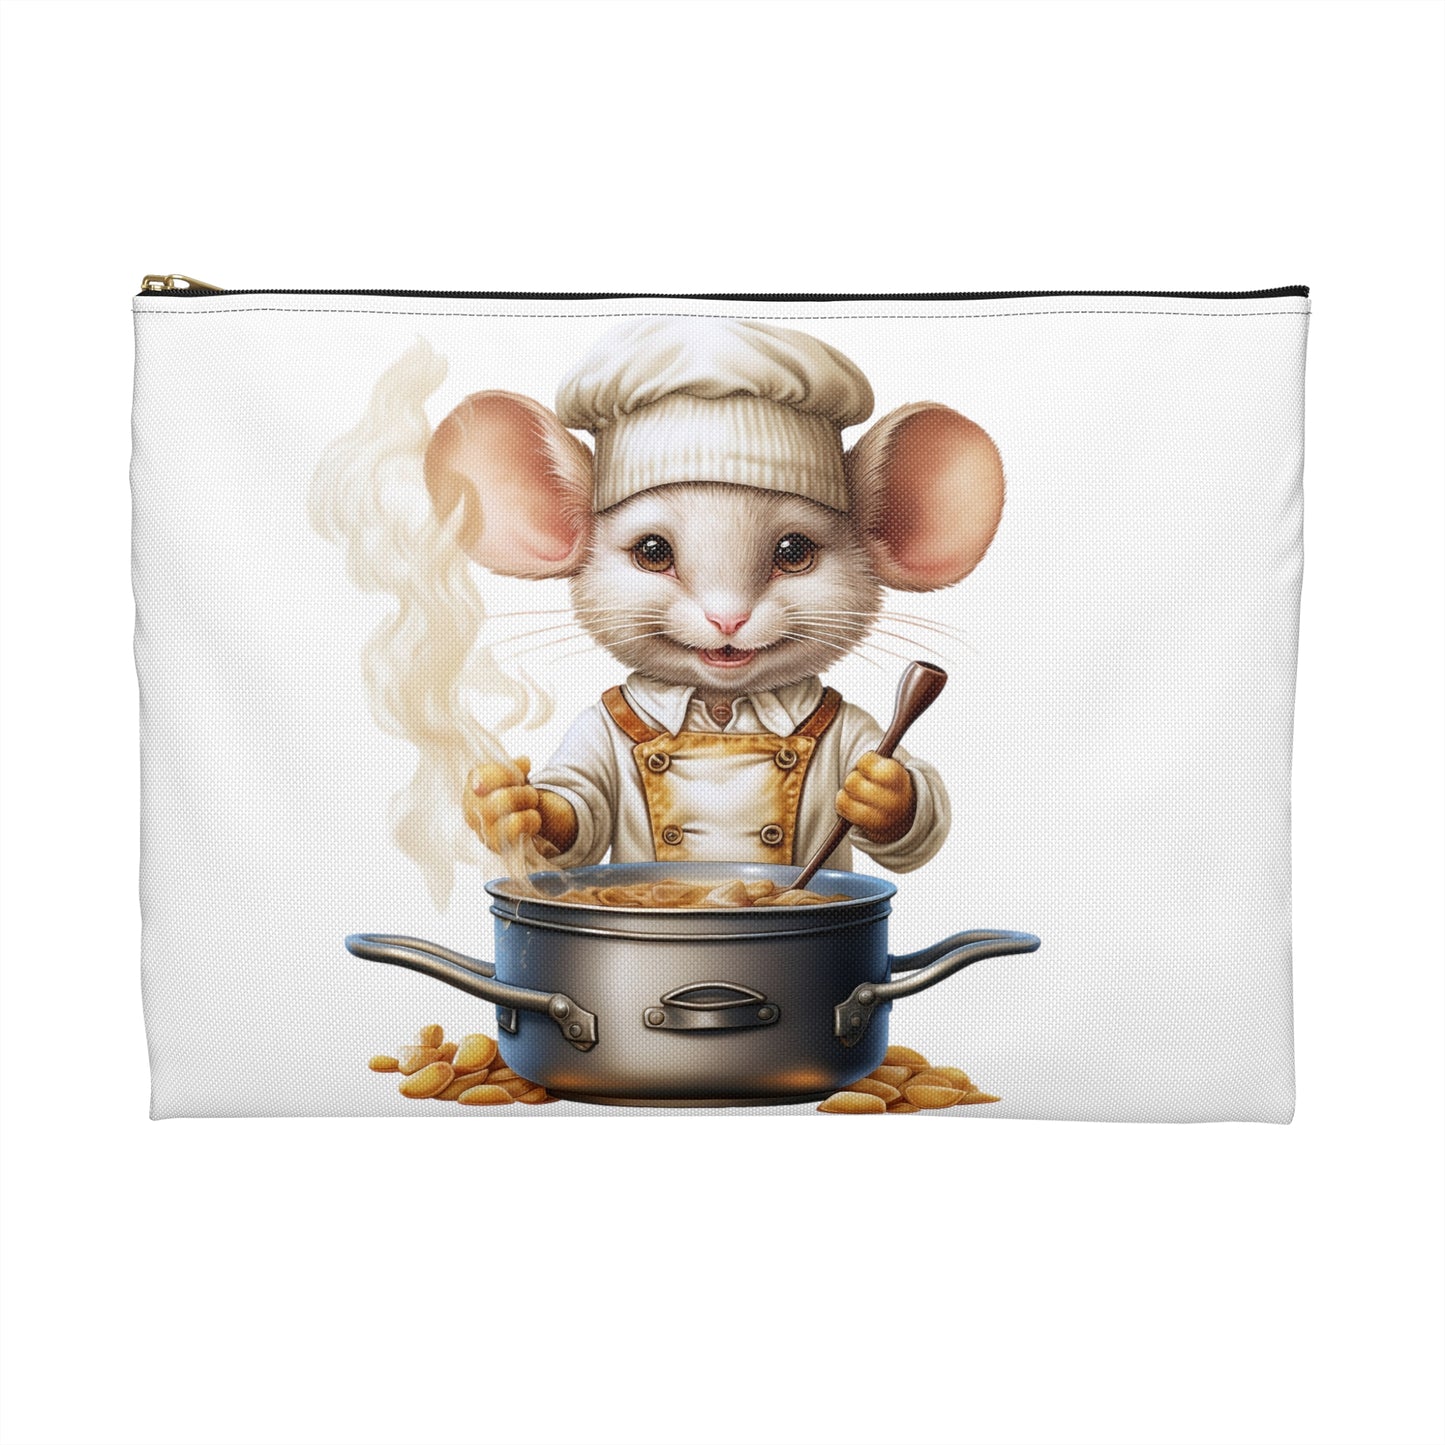 Makeup Bag Cute Mouse Accessory Pouch